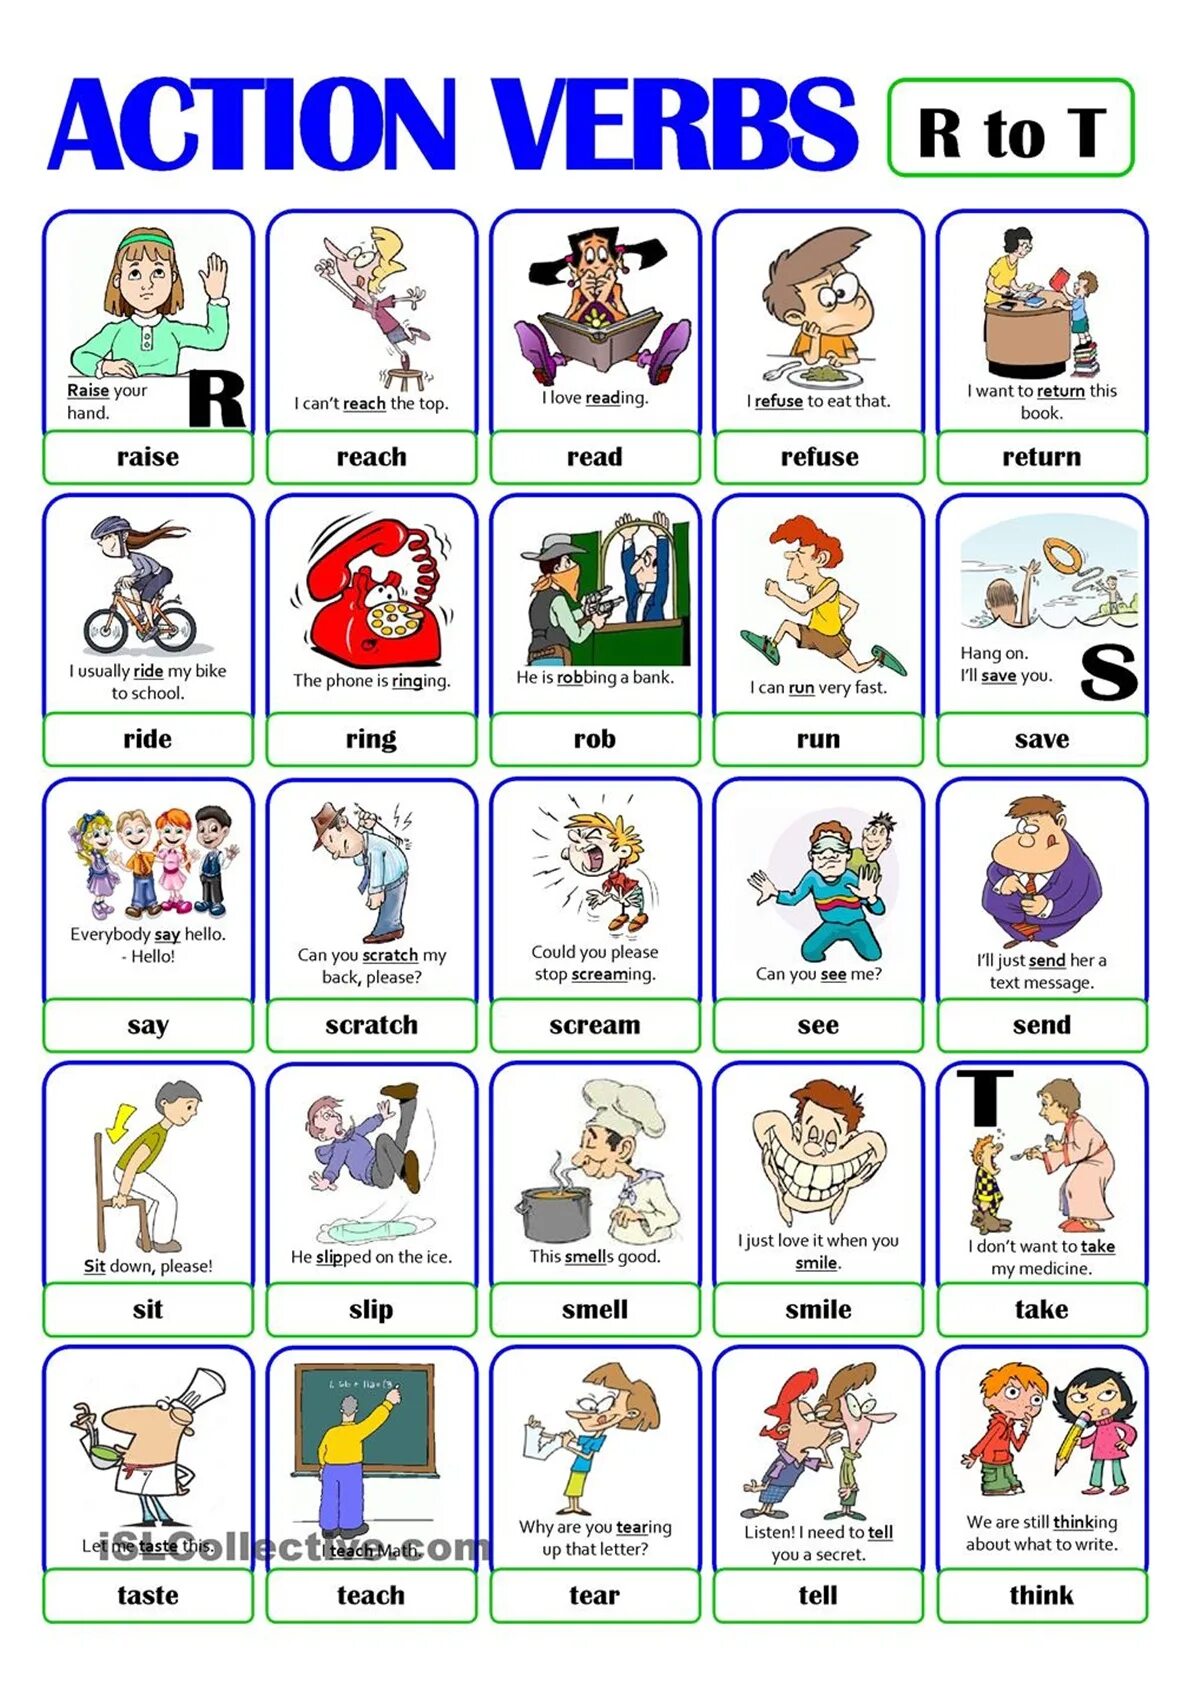 Action verbs в английском языке. Английский для детей карточки с глаголами. Карточки Actions английский. Глаголы на английском для детей. Картинки действий на английском